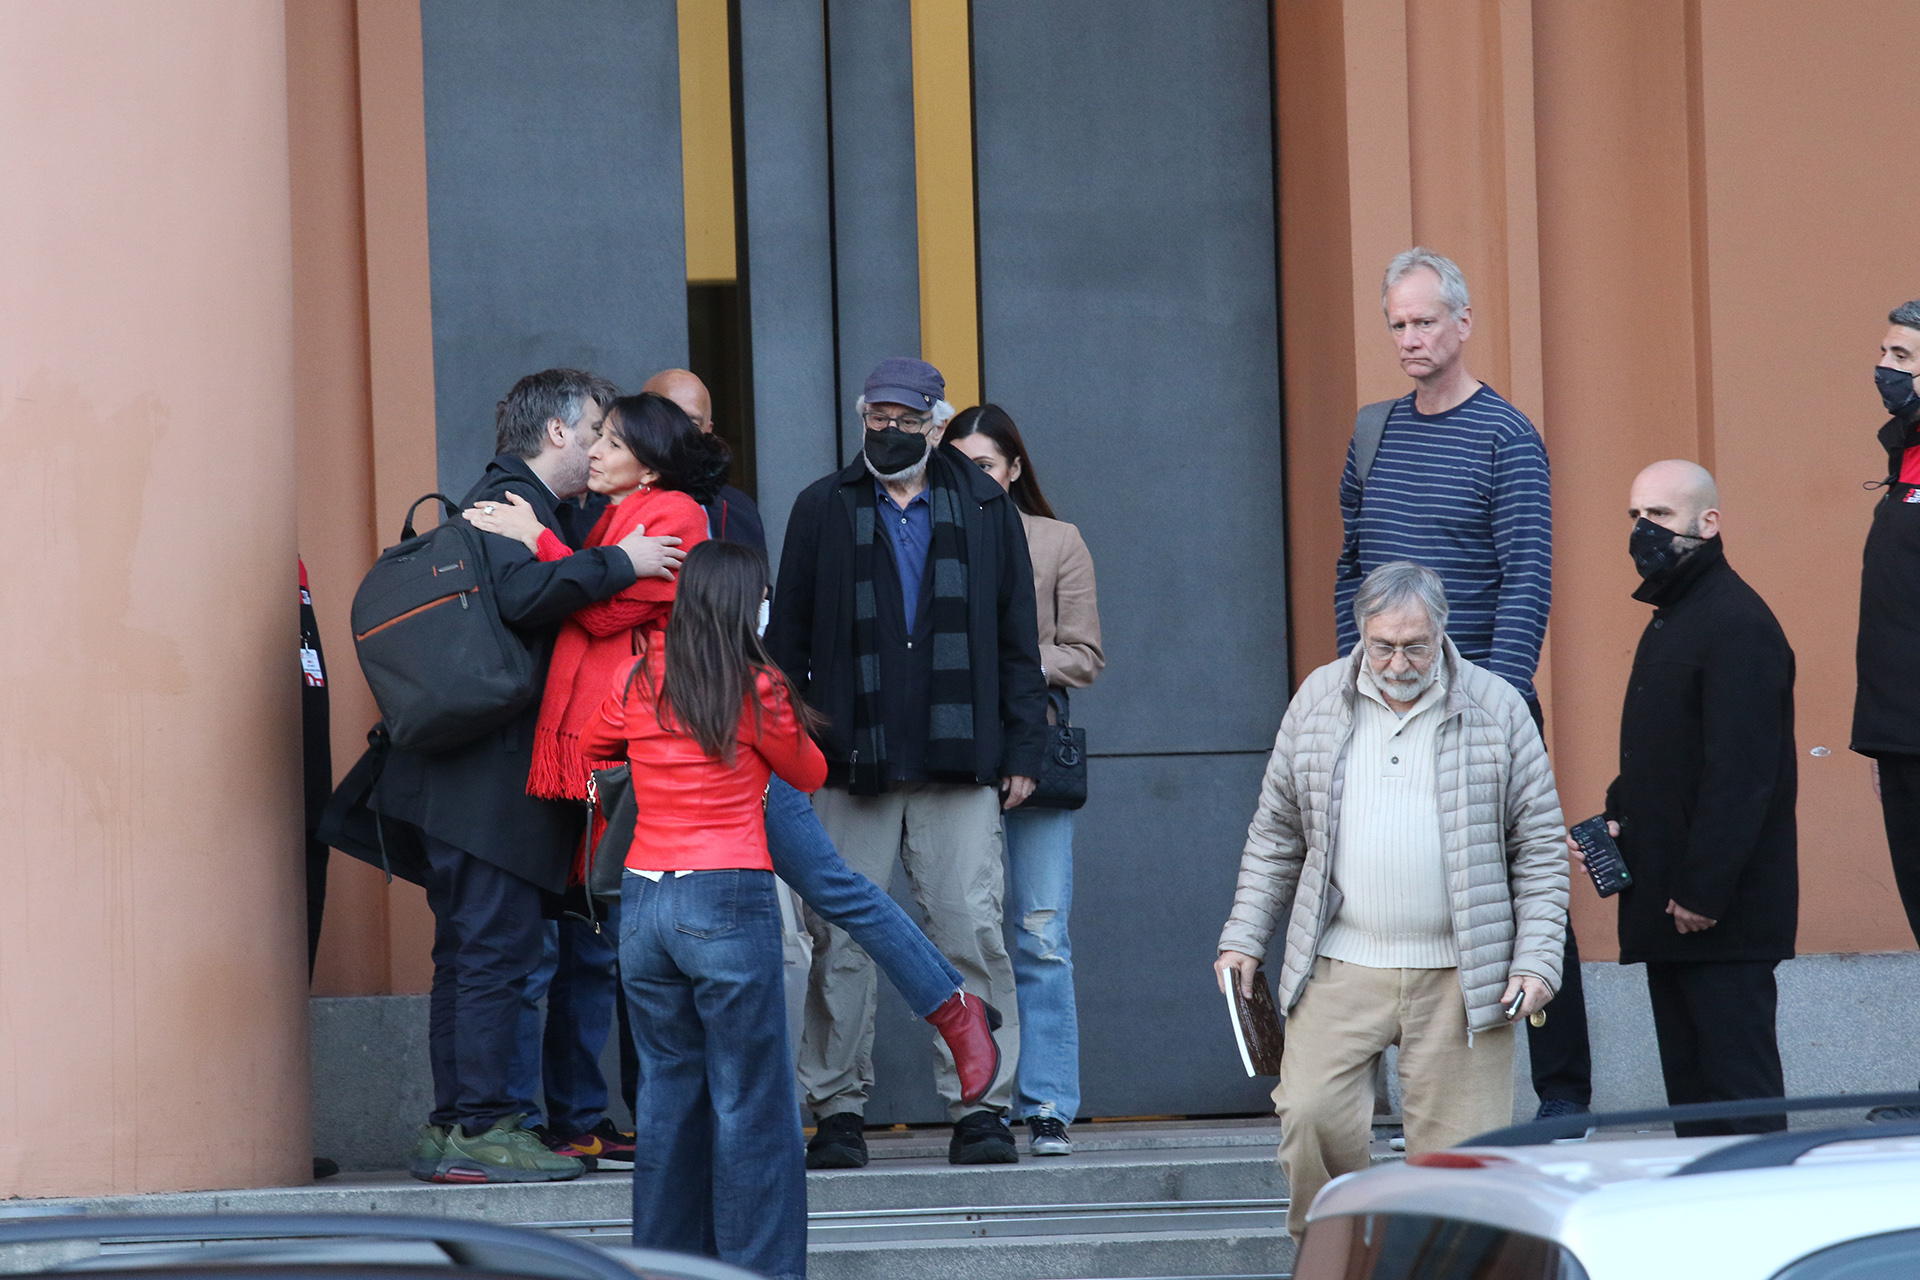 Las primeras horas de Robert De Niro en la Argentina: en la imagen, saliendo del Museo Nacional de Bellas Artes (Ramiro Souto)
